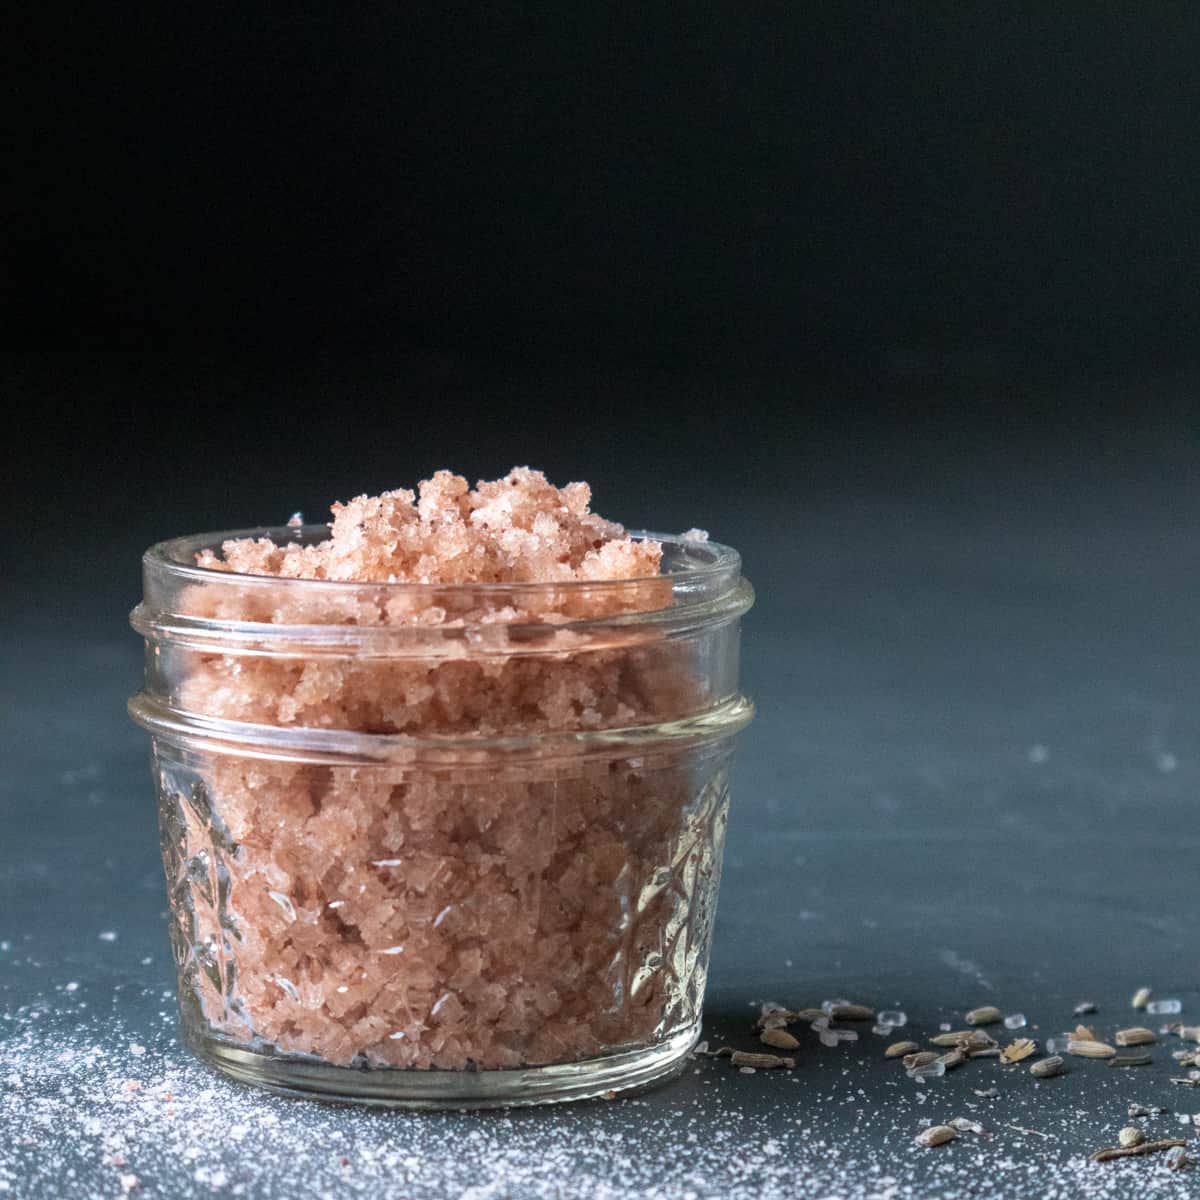 Salt scrub recipe made with Himalayan pink salt